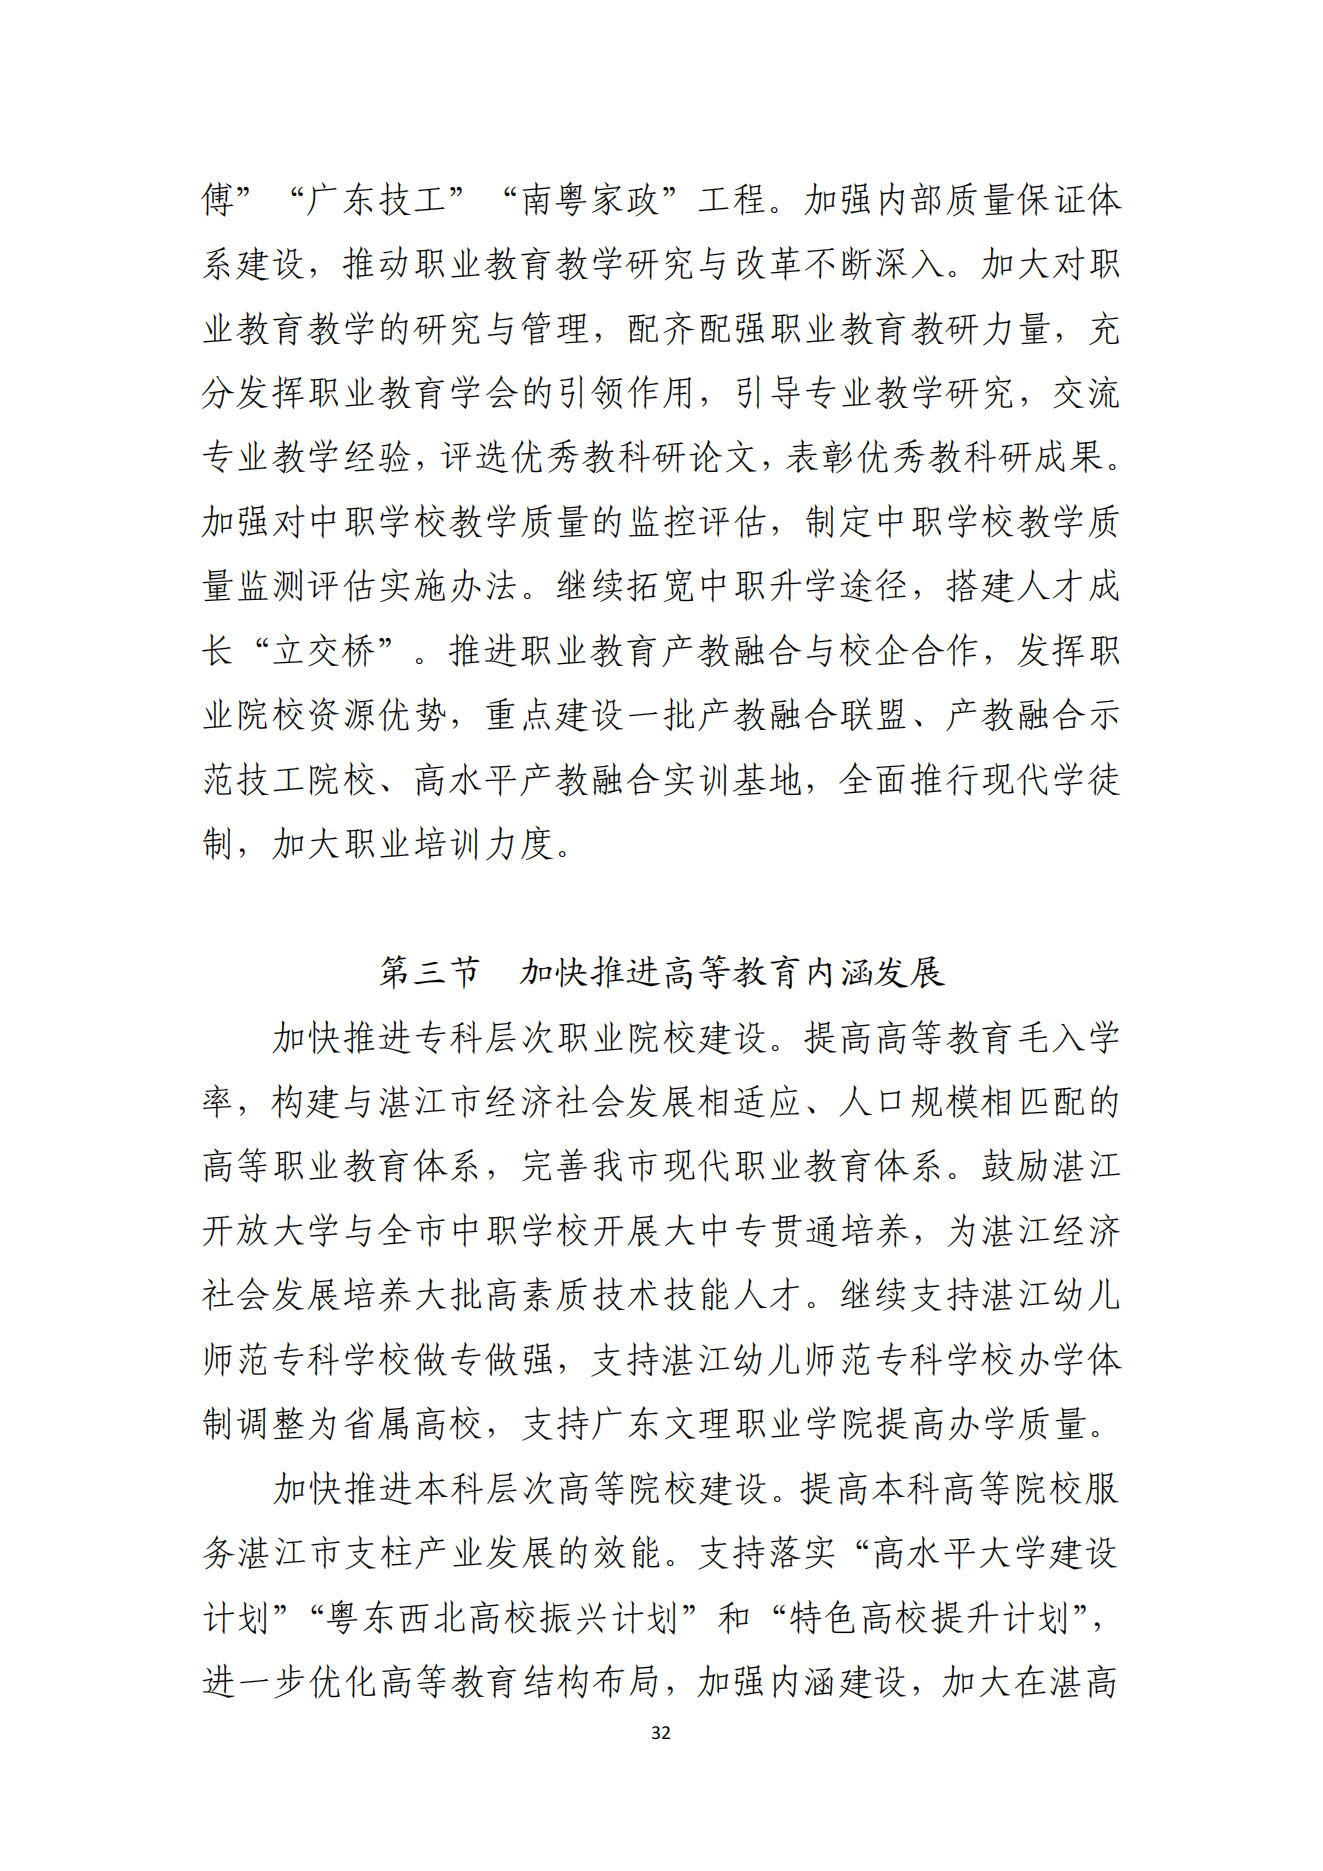 湛江市人民政府办公室关于印发湛江市教育发展“十四五”规划的通知_31.png